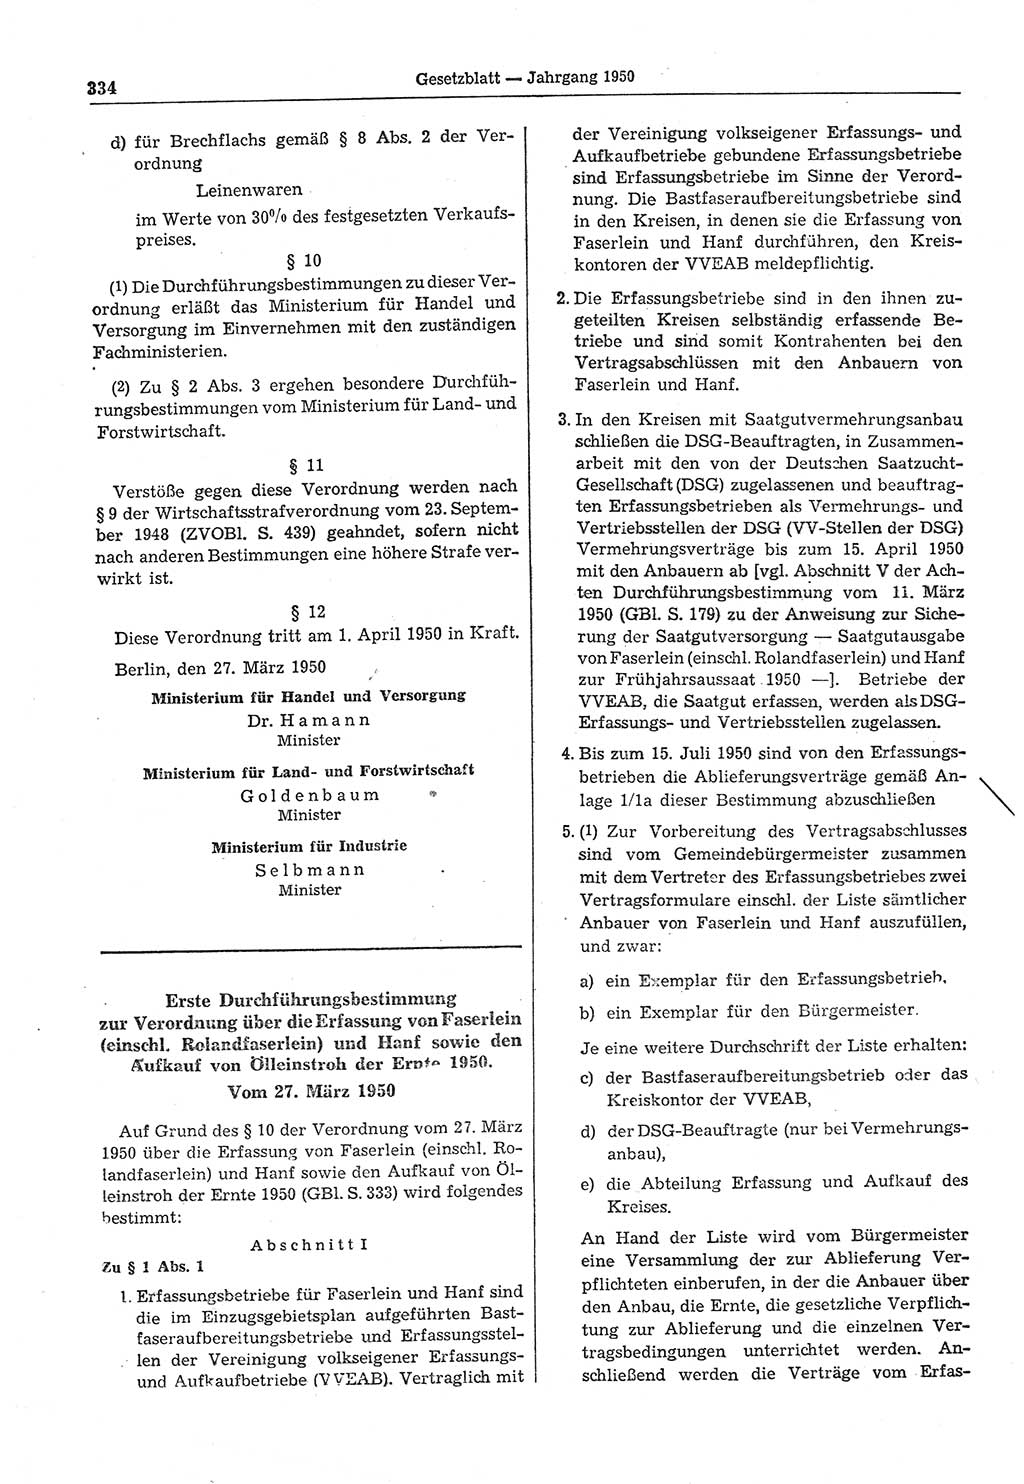 Gesetzblatt (GBl.) der Deutschen Demokratischen Republik (DDR) 1950, Seite 334 (GBl. DDR 1950, S. 334)